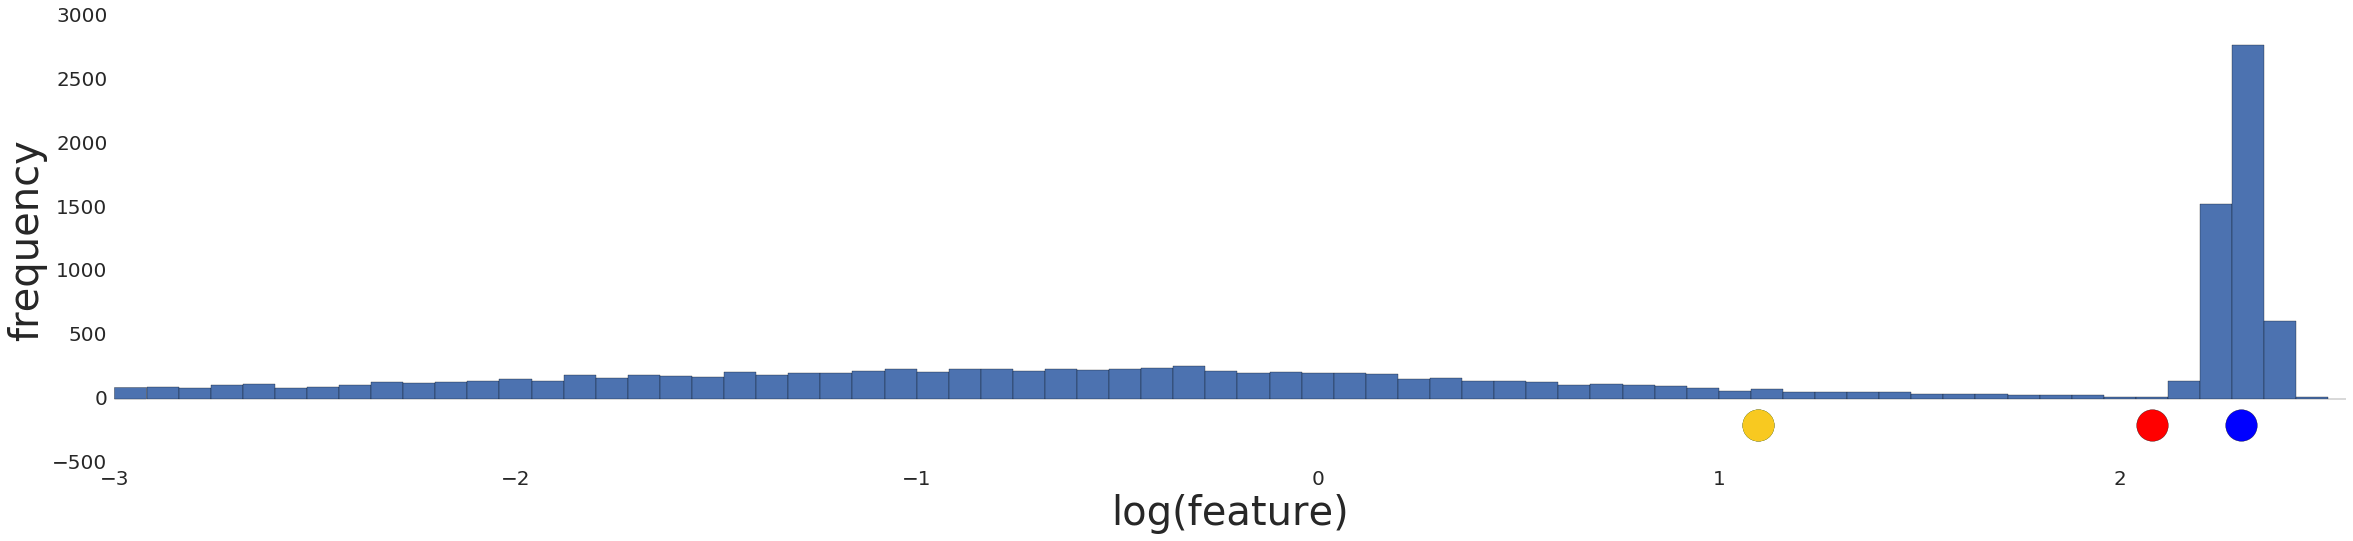 Un grafo que muestra la distribución de datos después de una transformación de registro